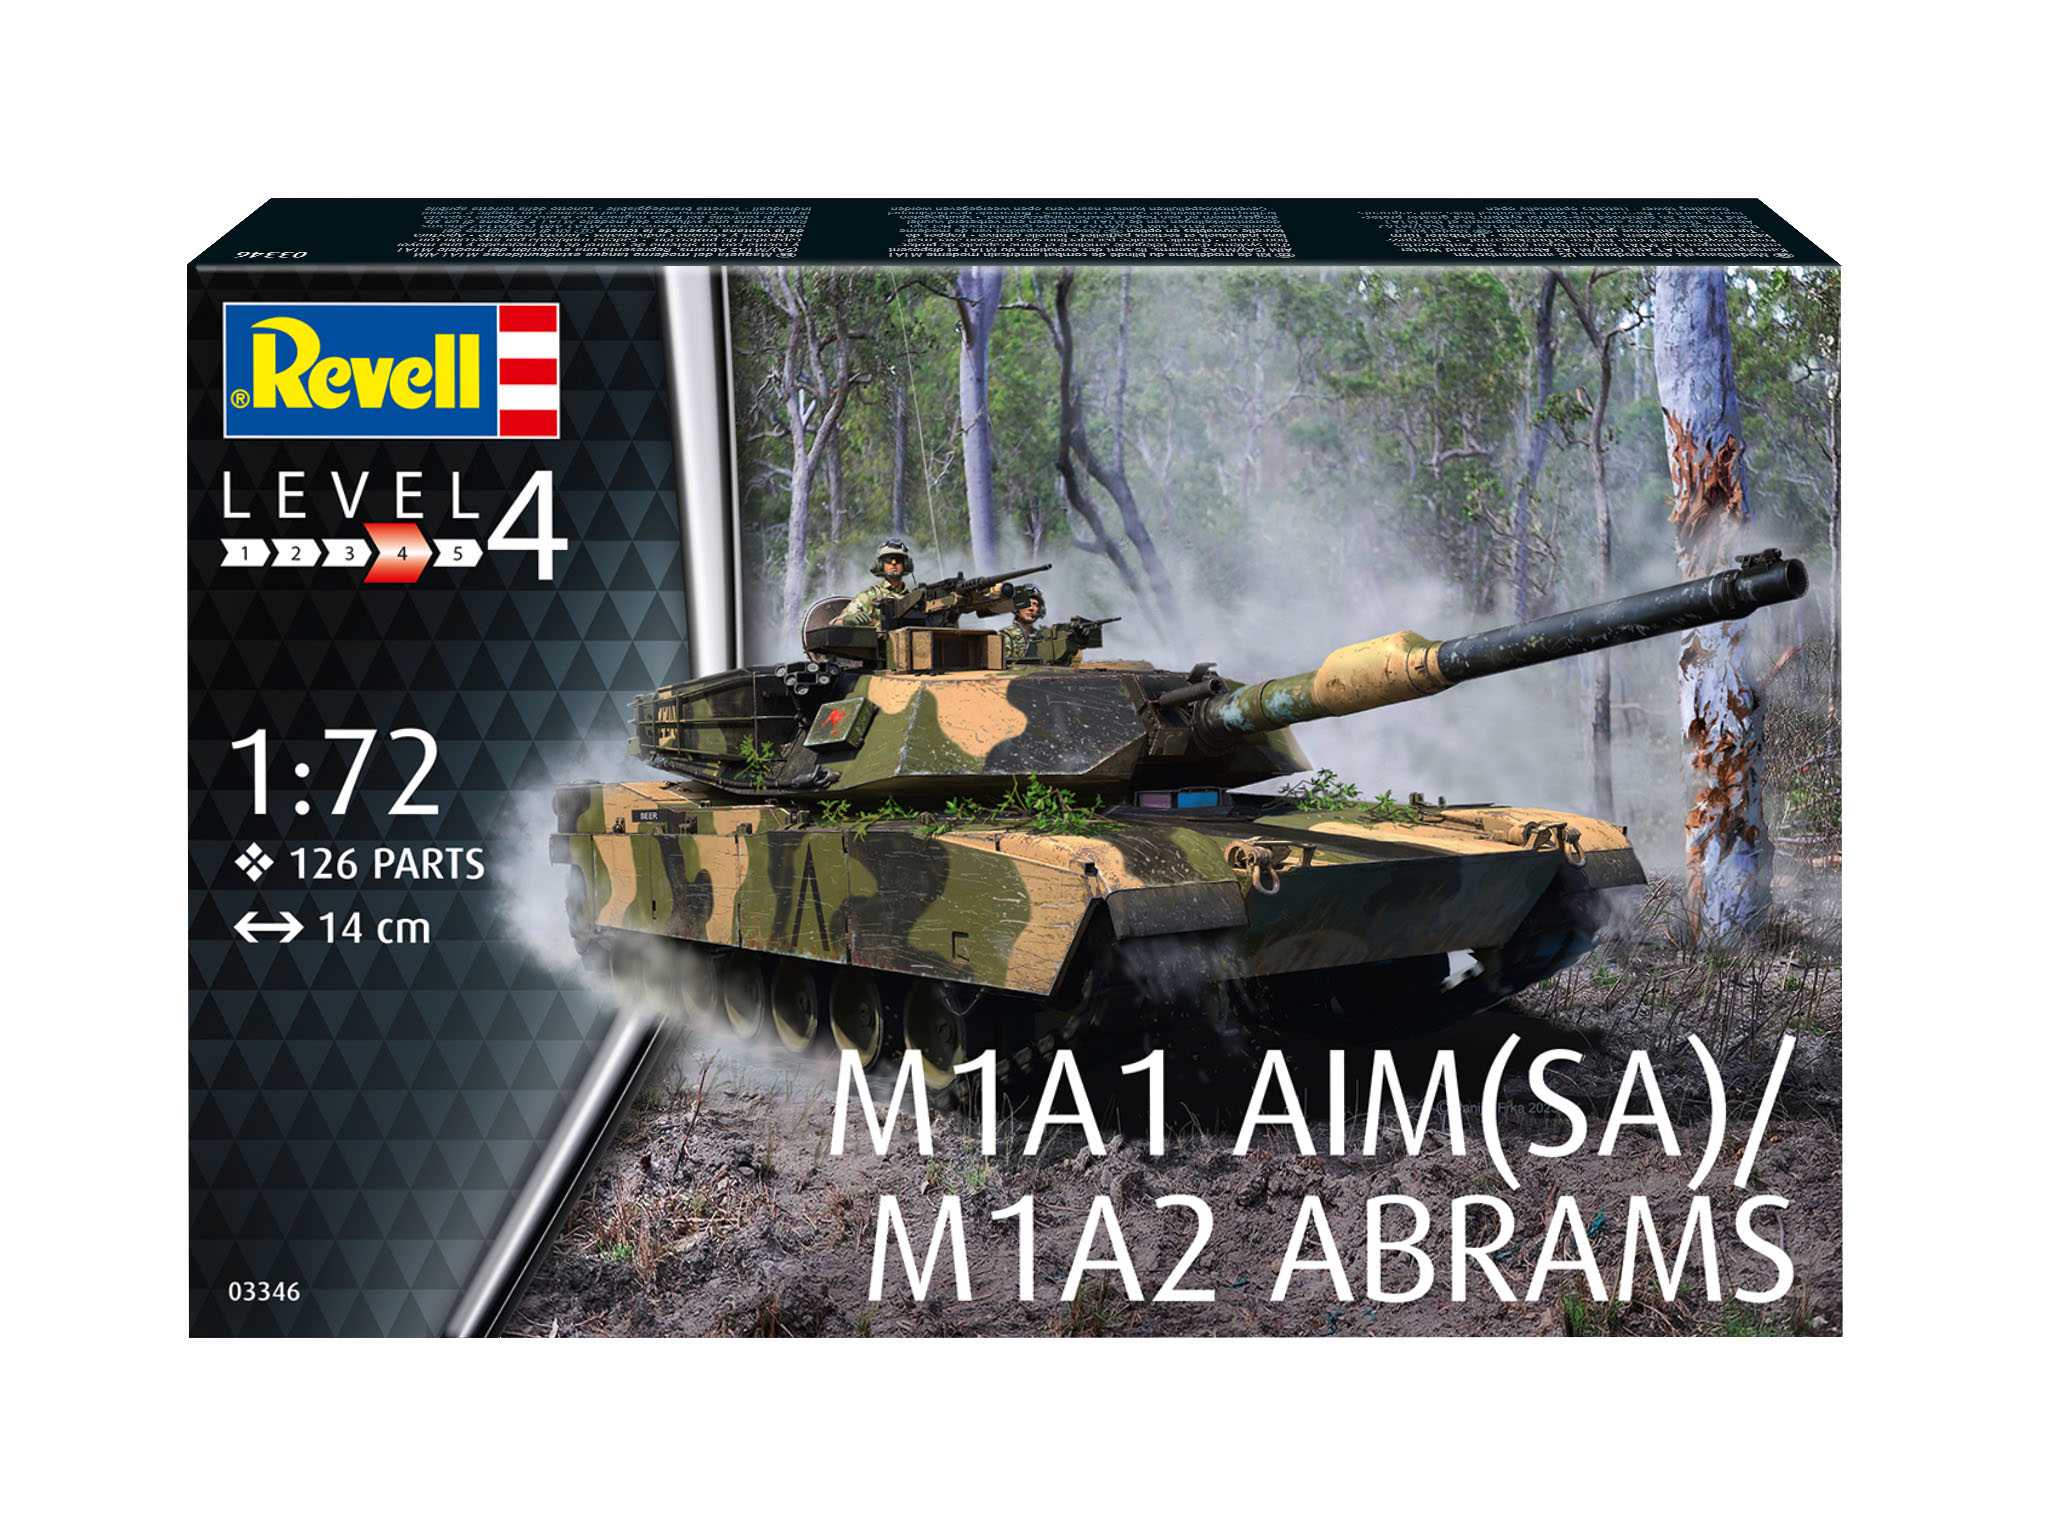 M1A2 Abrams / M1A1 AIM(SA)